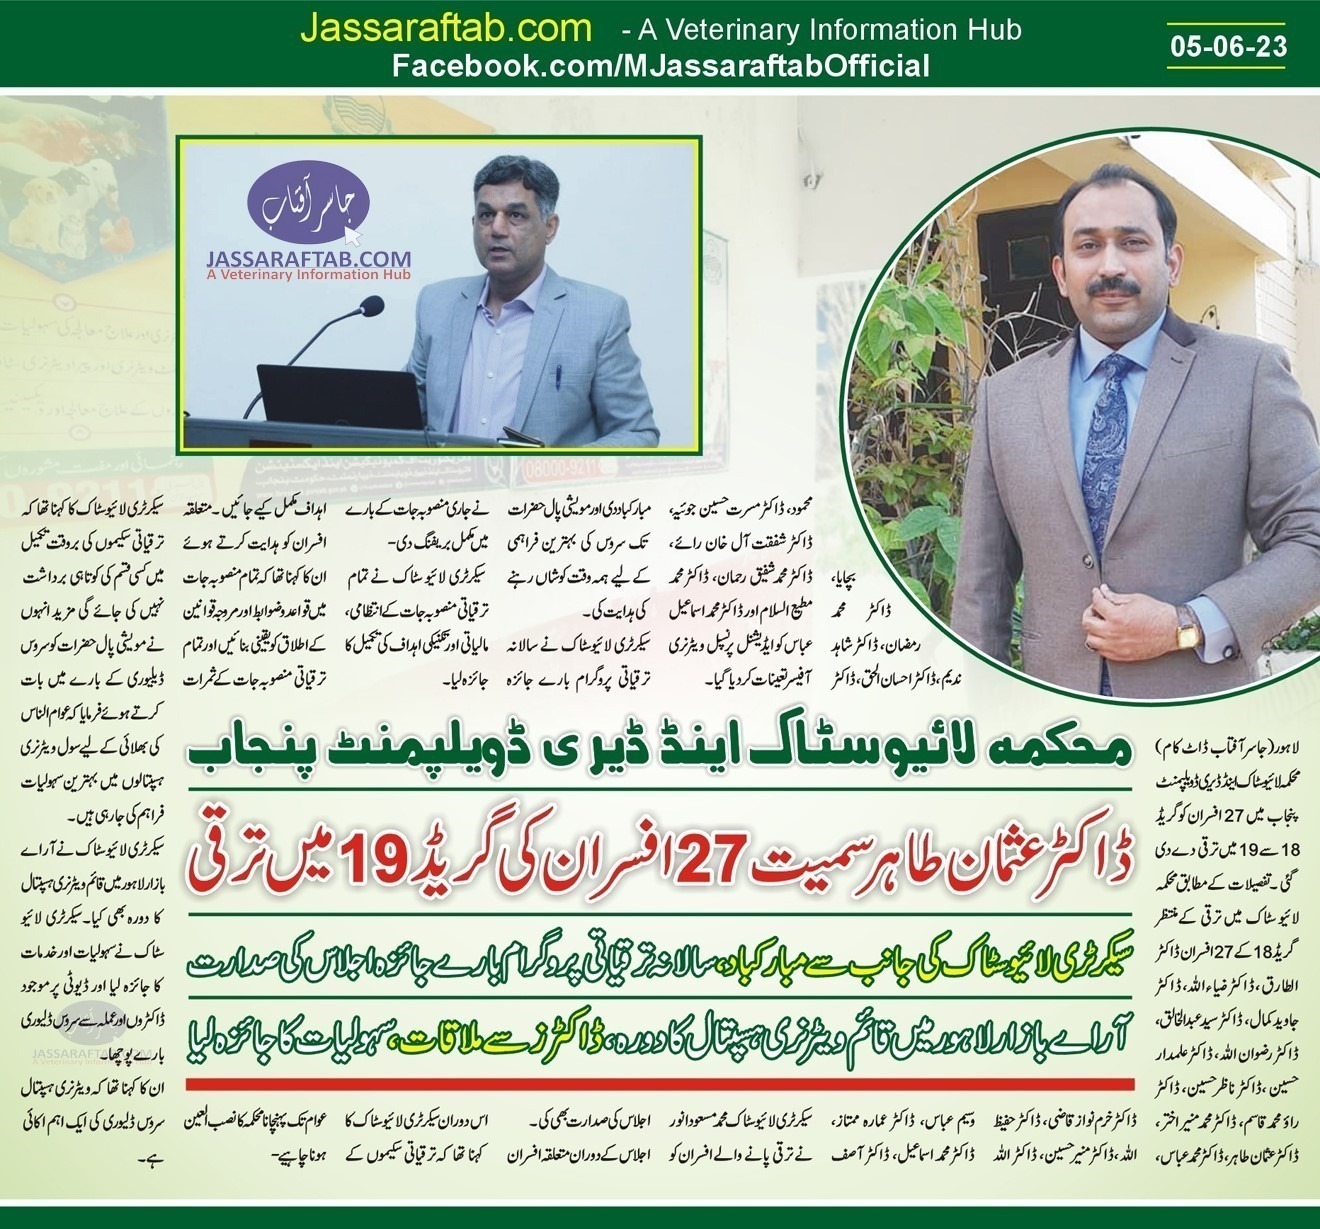 Livestock Officers Promotion including Dr. Usman Tahir